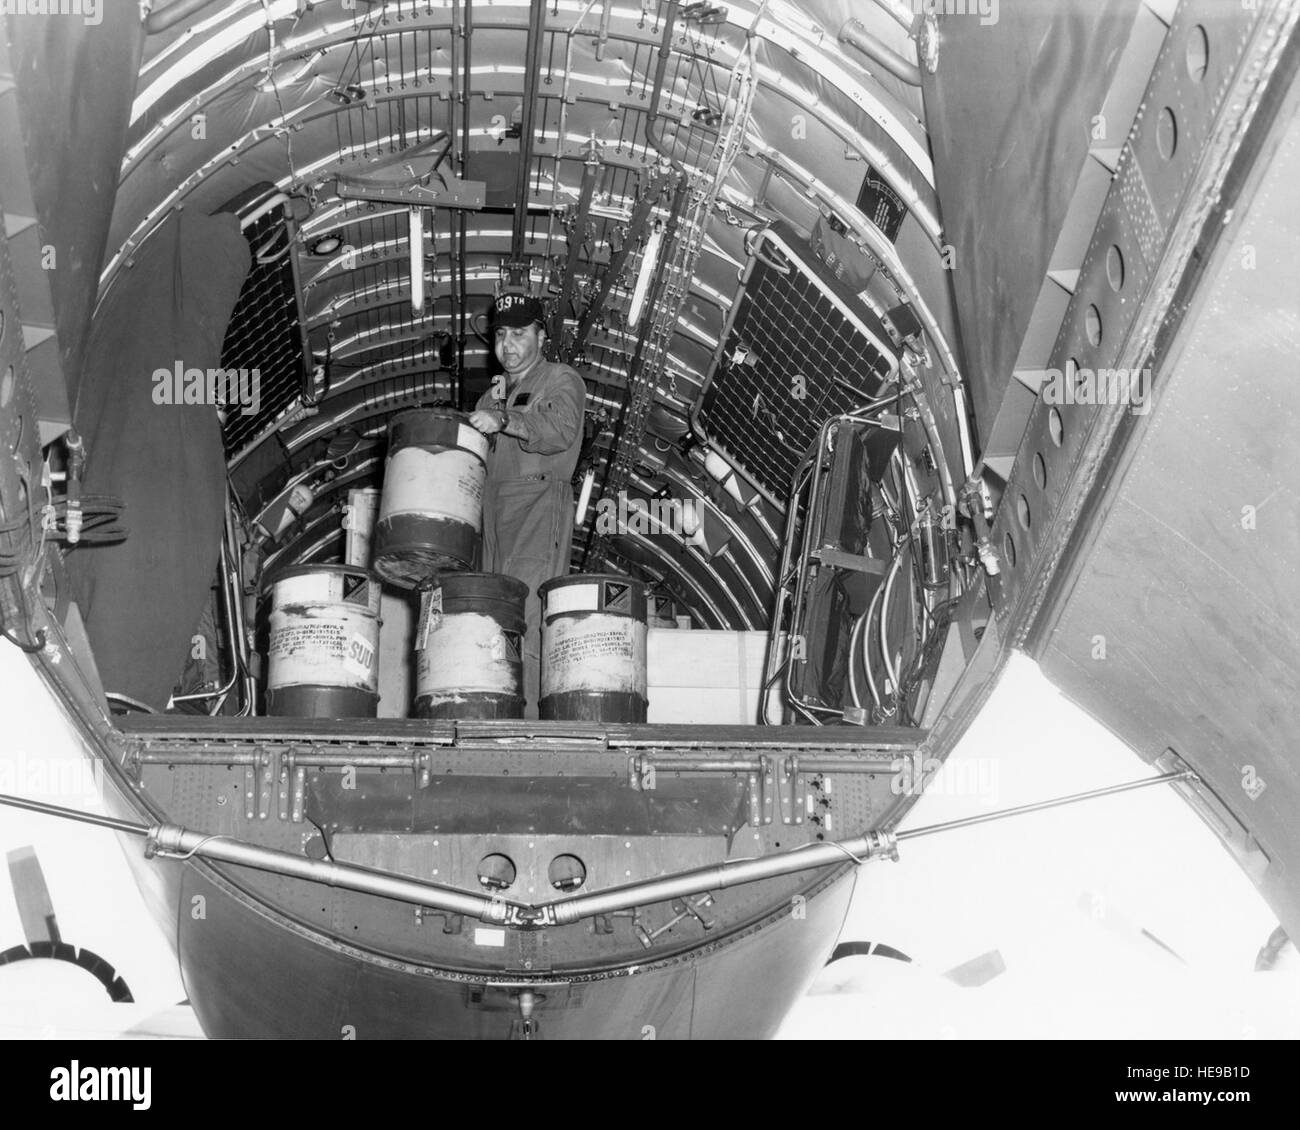 95956 USAF - TSgt Michael A. Messineo, Loadmaster von einem New York Air National Guard C-97, hilft Unoad das Flugzeug auf Tan Son Nhut Air Base in der Republik Vietnam.  März 1966.  US-Luftwaffe Foto. Stockfoto